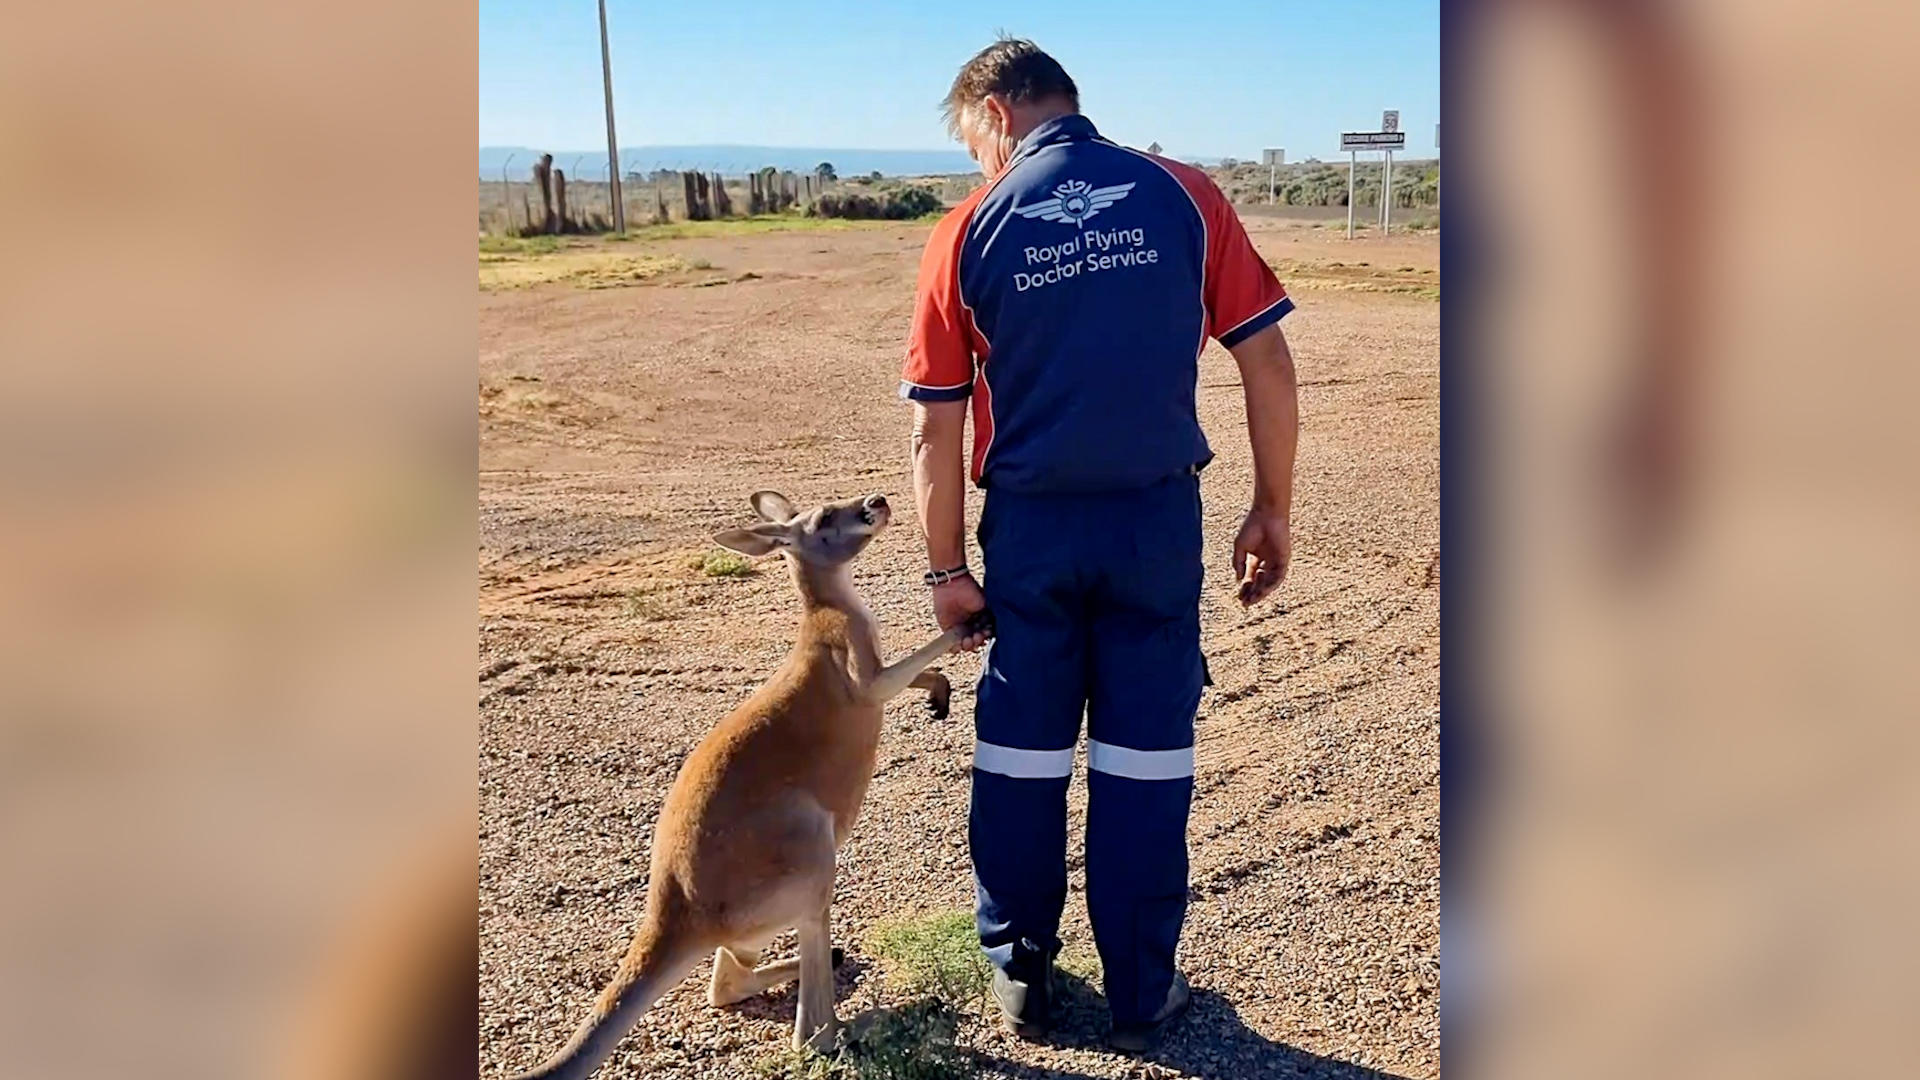 Känguru sucht ungewöhnliche Nähe zu Piloten Ganz Australien ist gerührt!